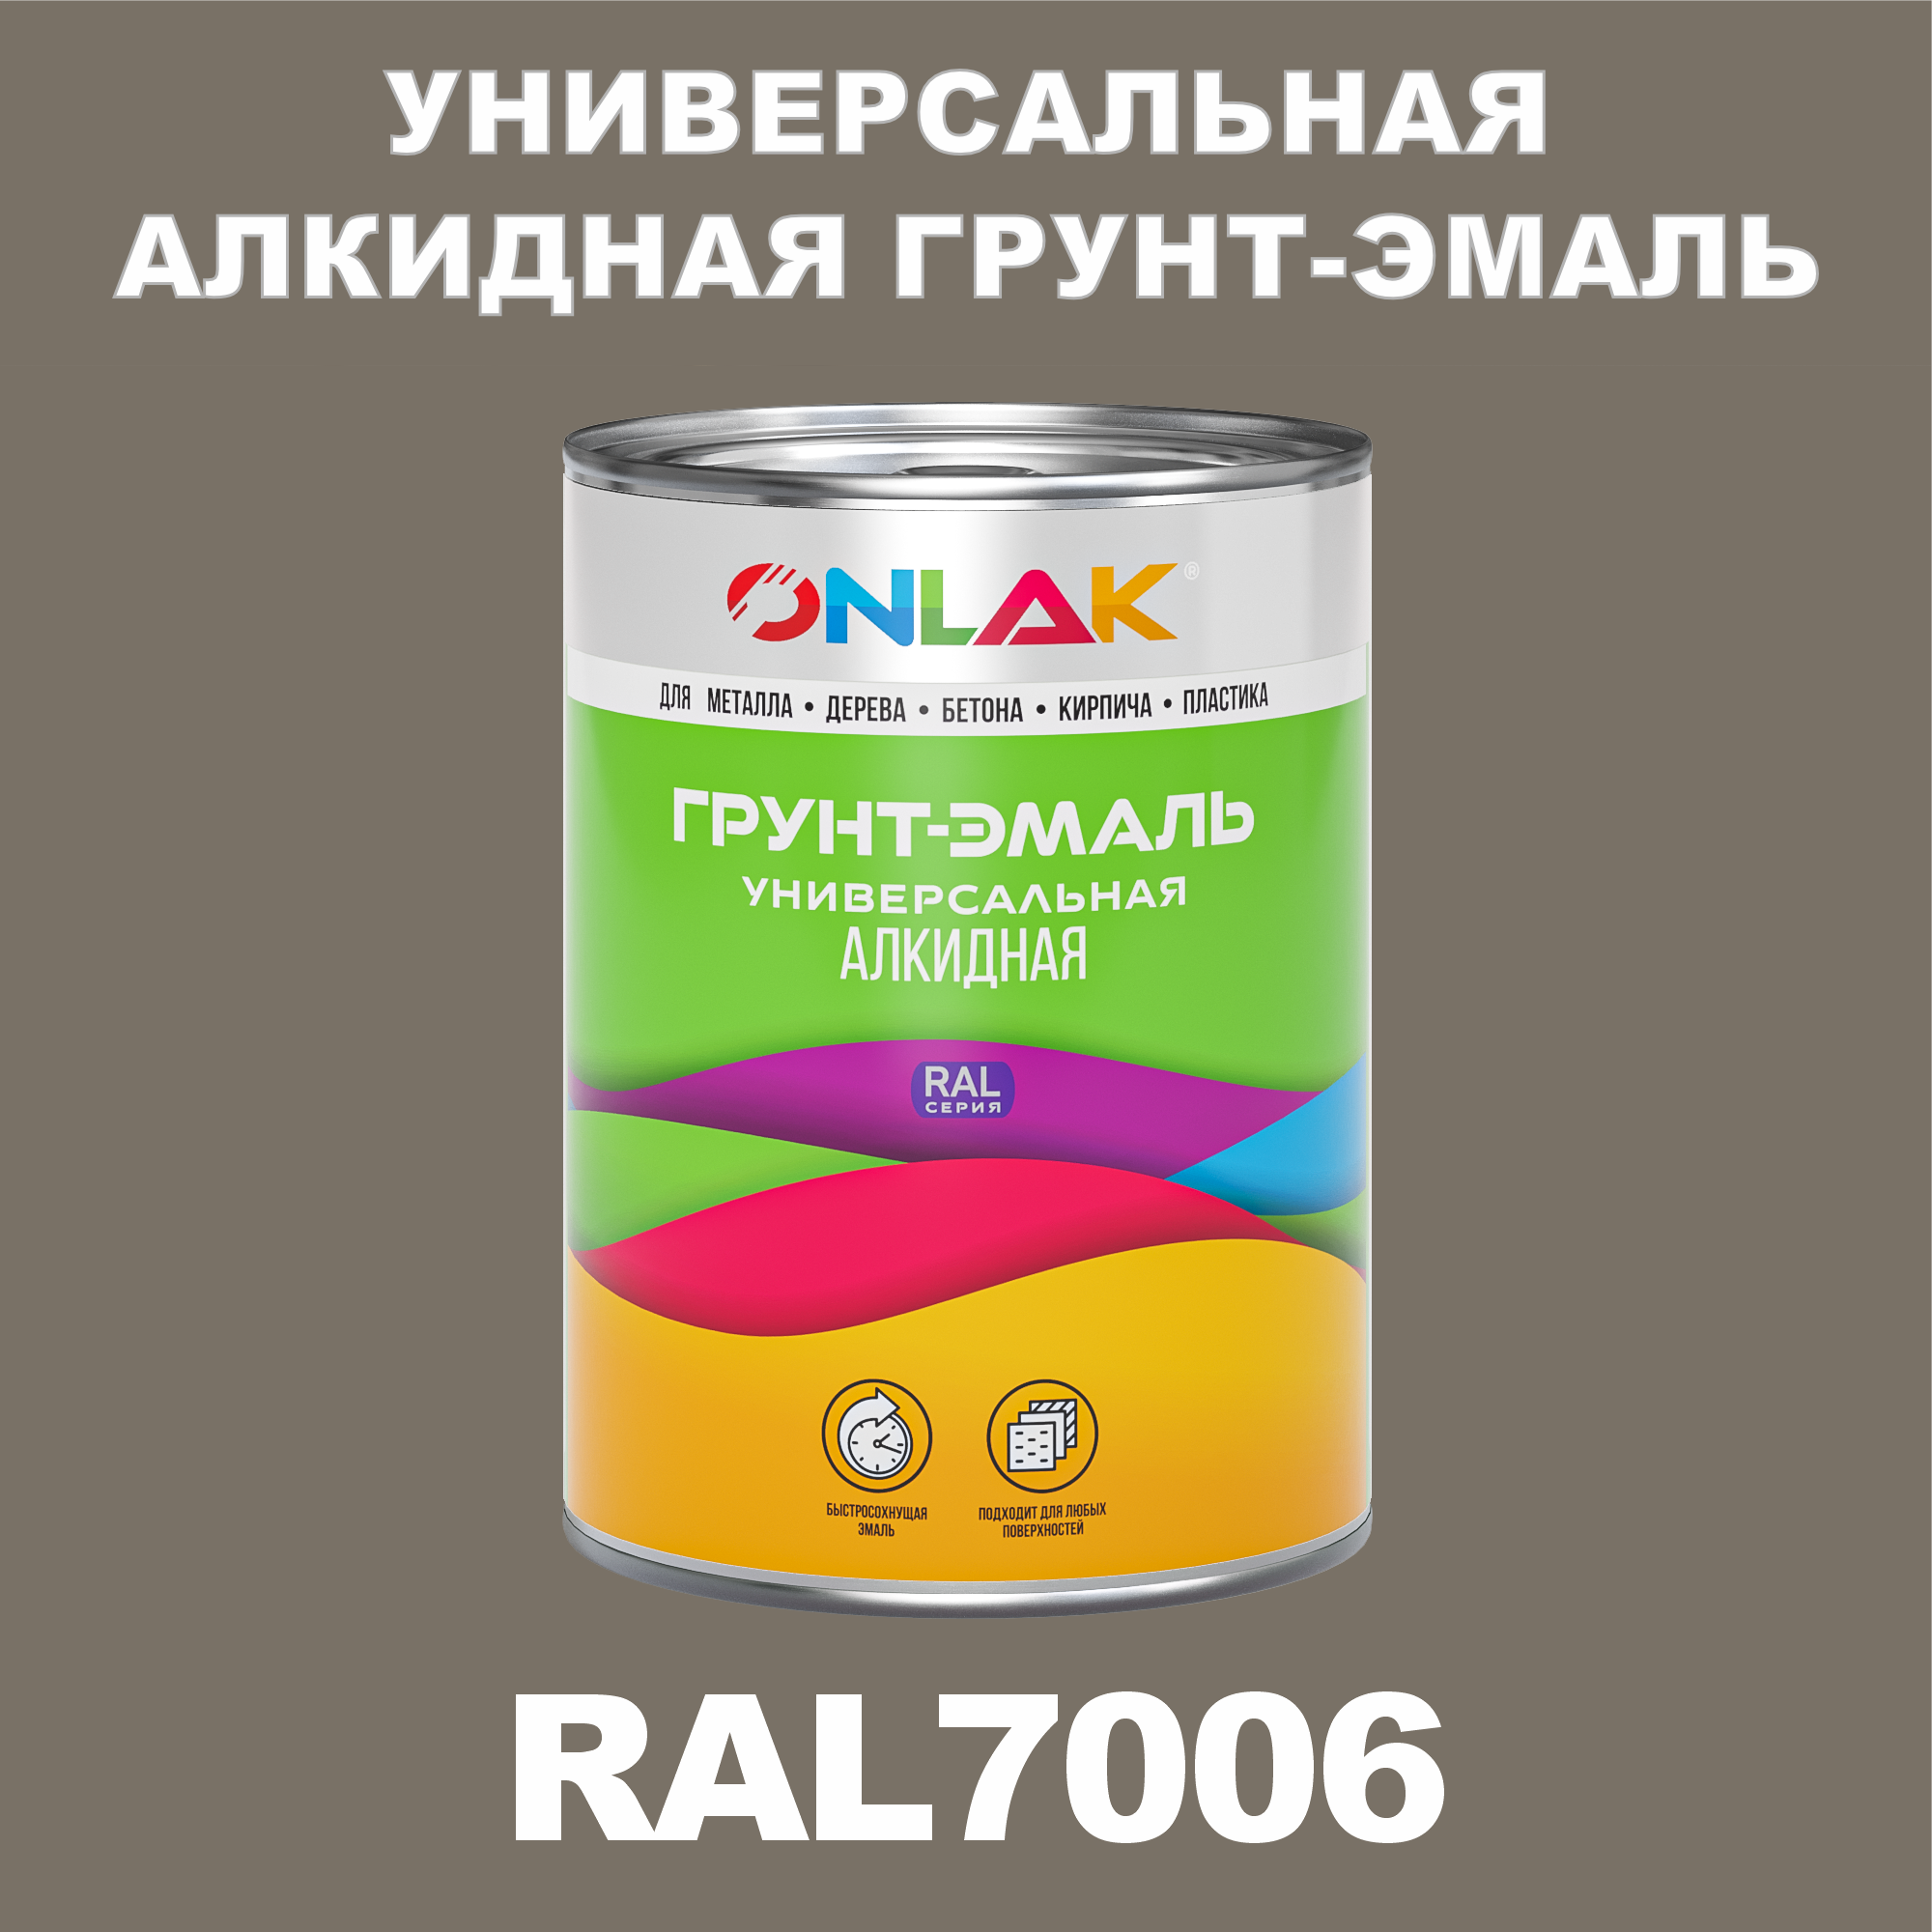 Грунт-эмаль ONLAK 1К RAL7006 антикоррозионная алкидная по металлу по ржавчине 1 кг грунт эмаль yollo по ржавчине алкидная зеленая 0 9 кг